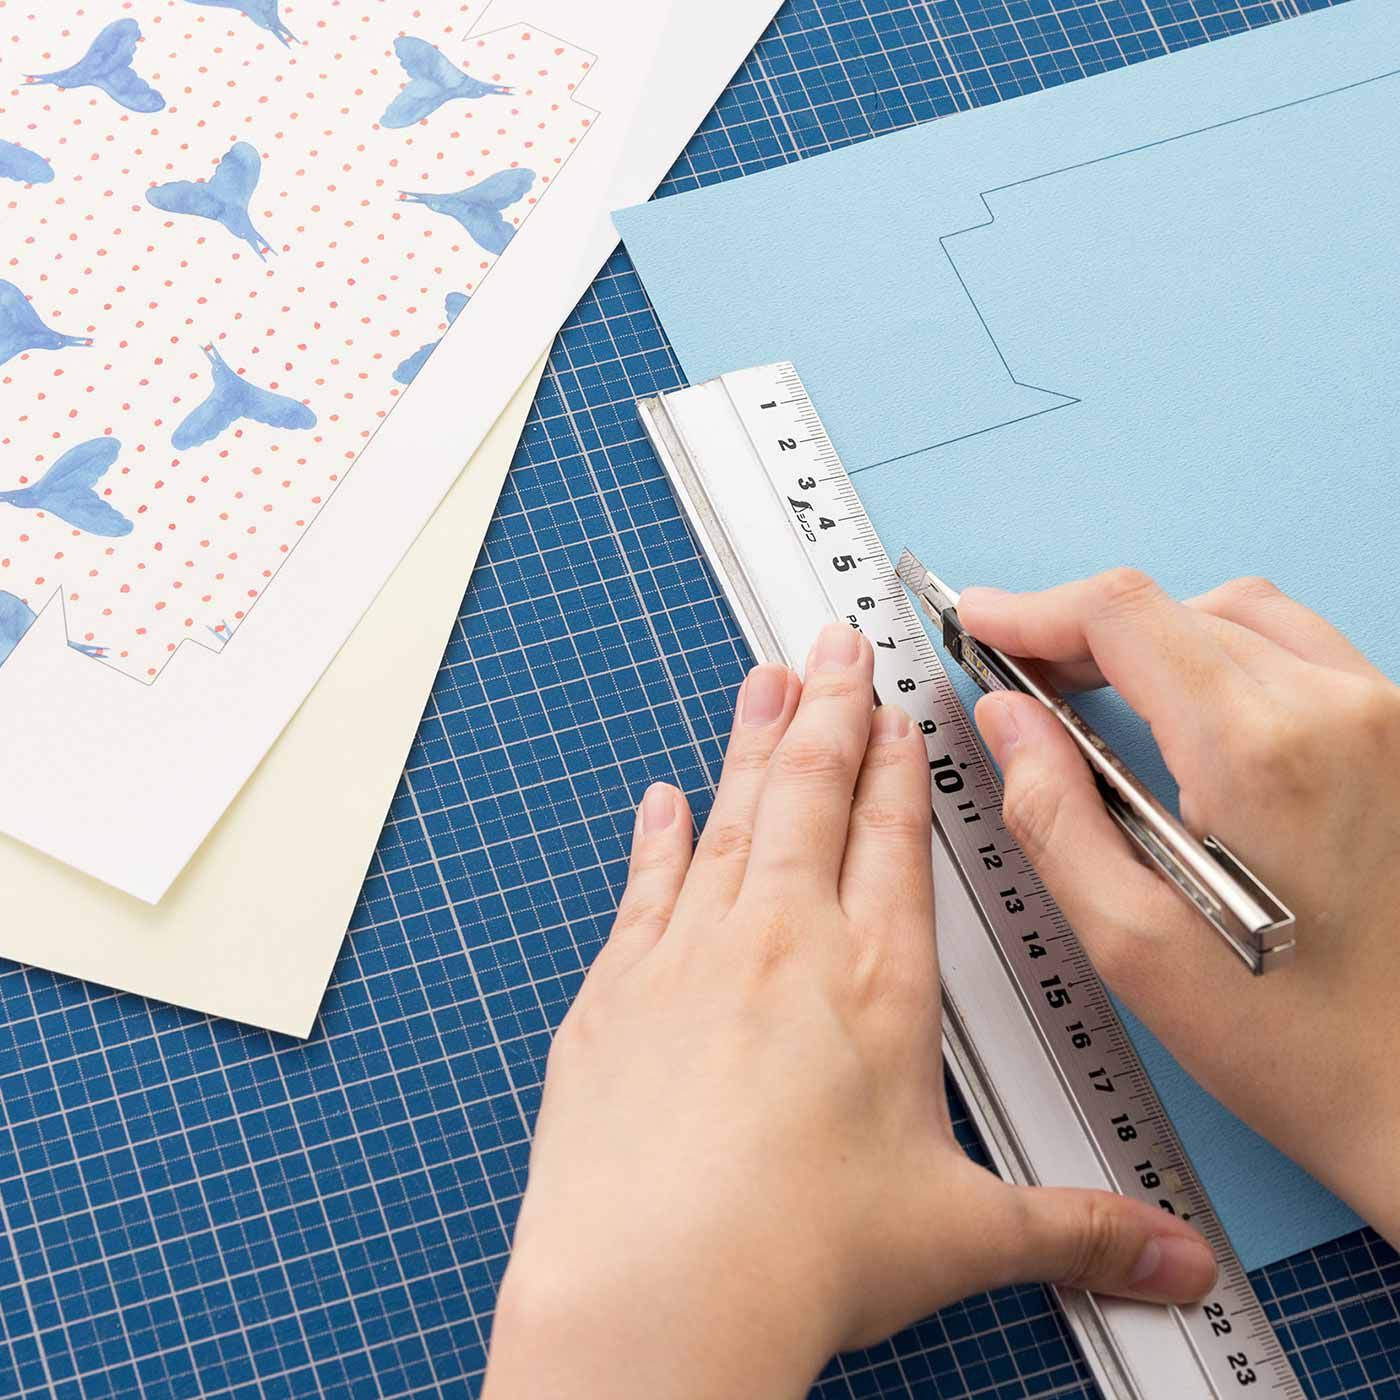 クチュリエ|かわいいデザインに心躍る はじめてでも簡単にできる紙箱づくりの会|柄紙と色紙に両面シールを貼り、線に沿ってカットします。